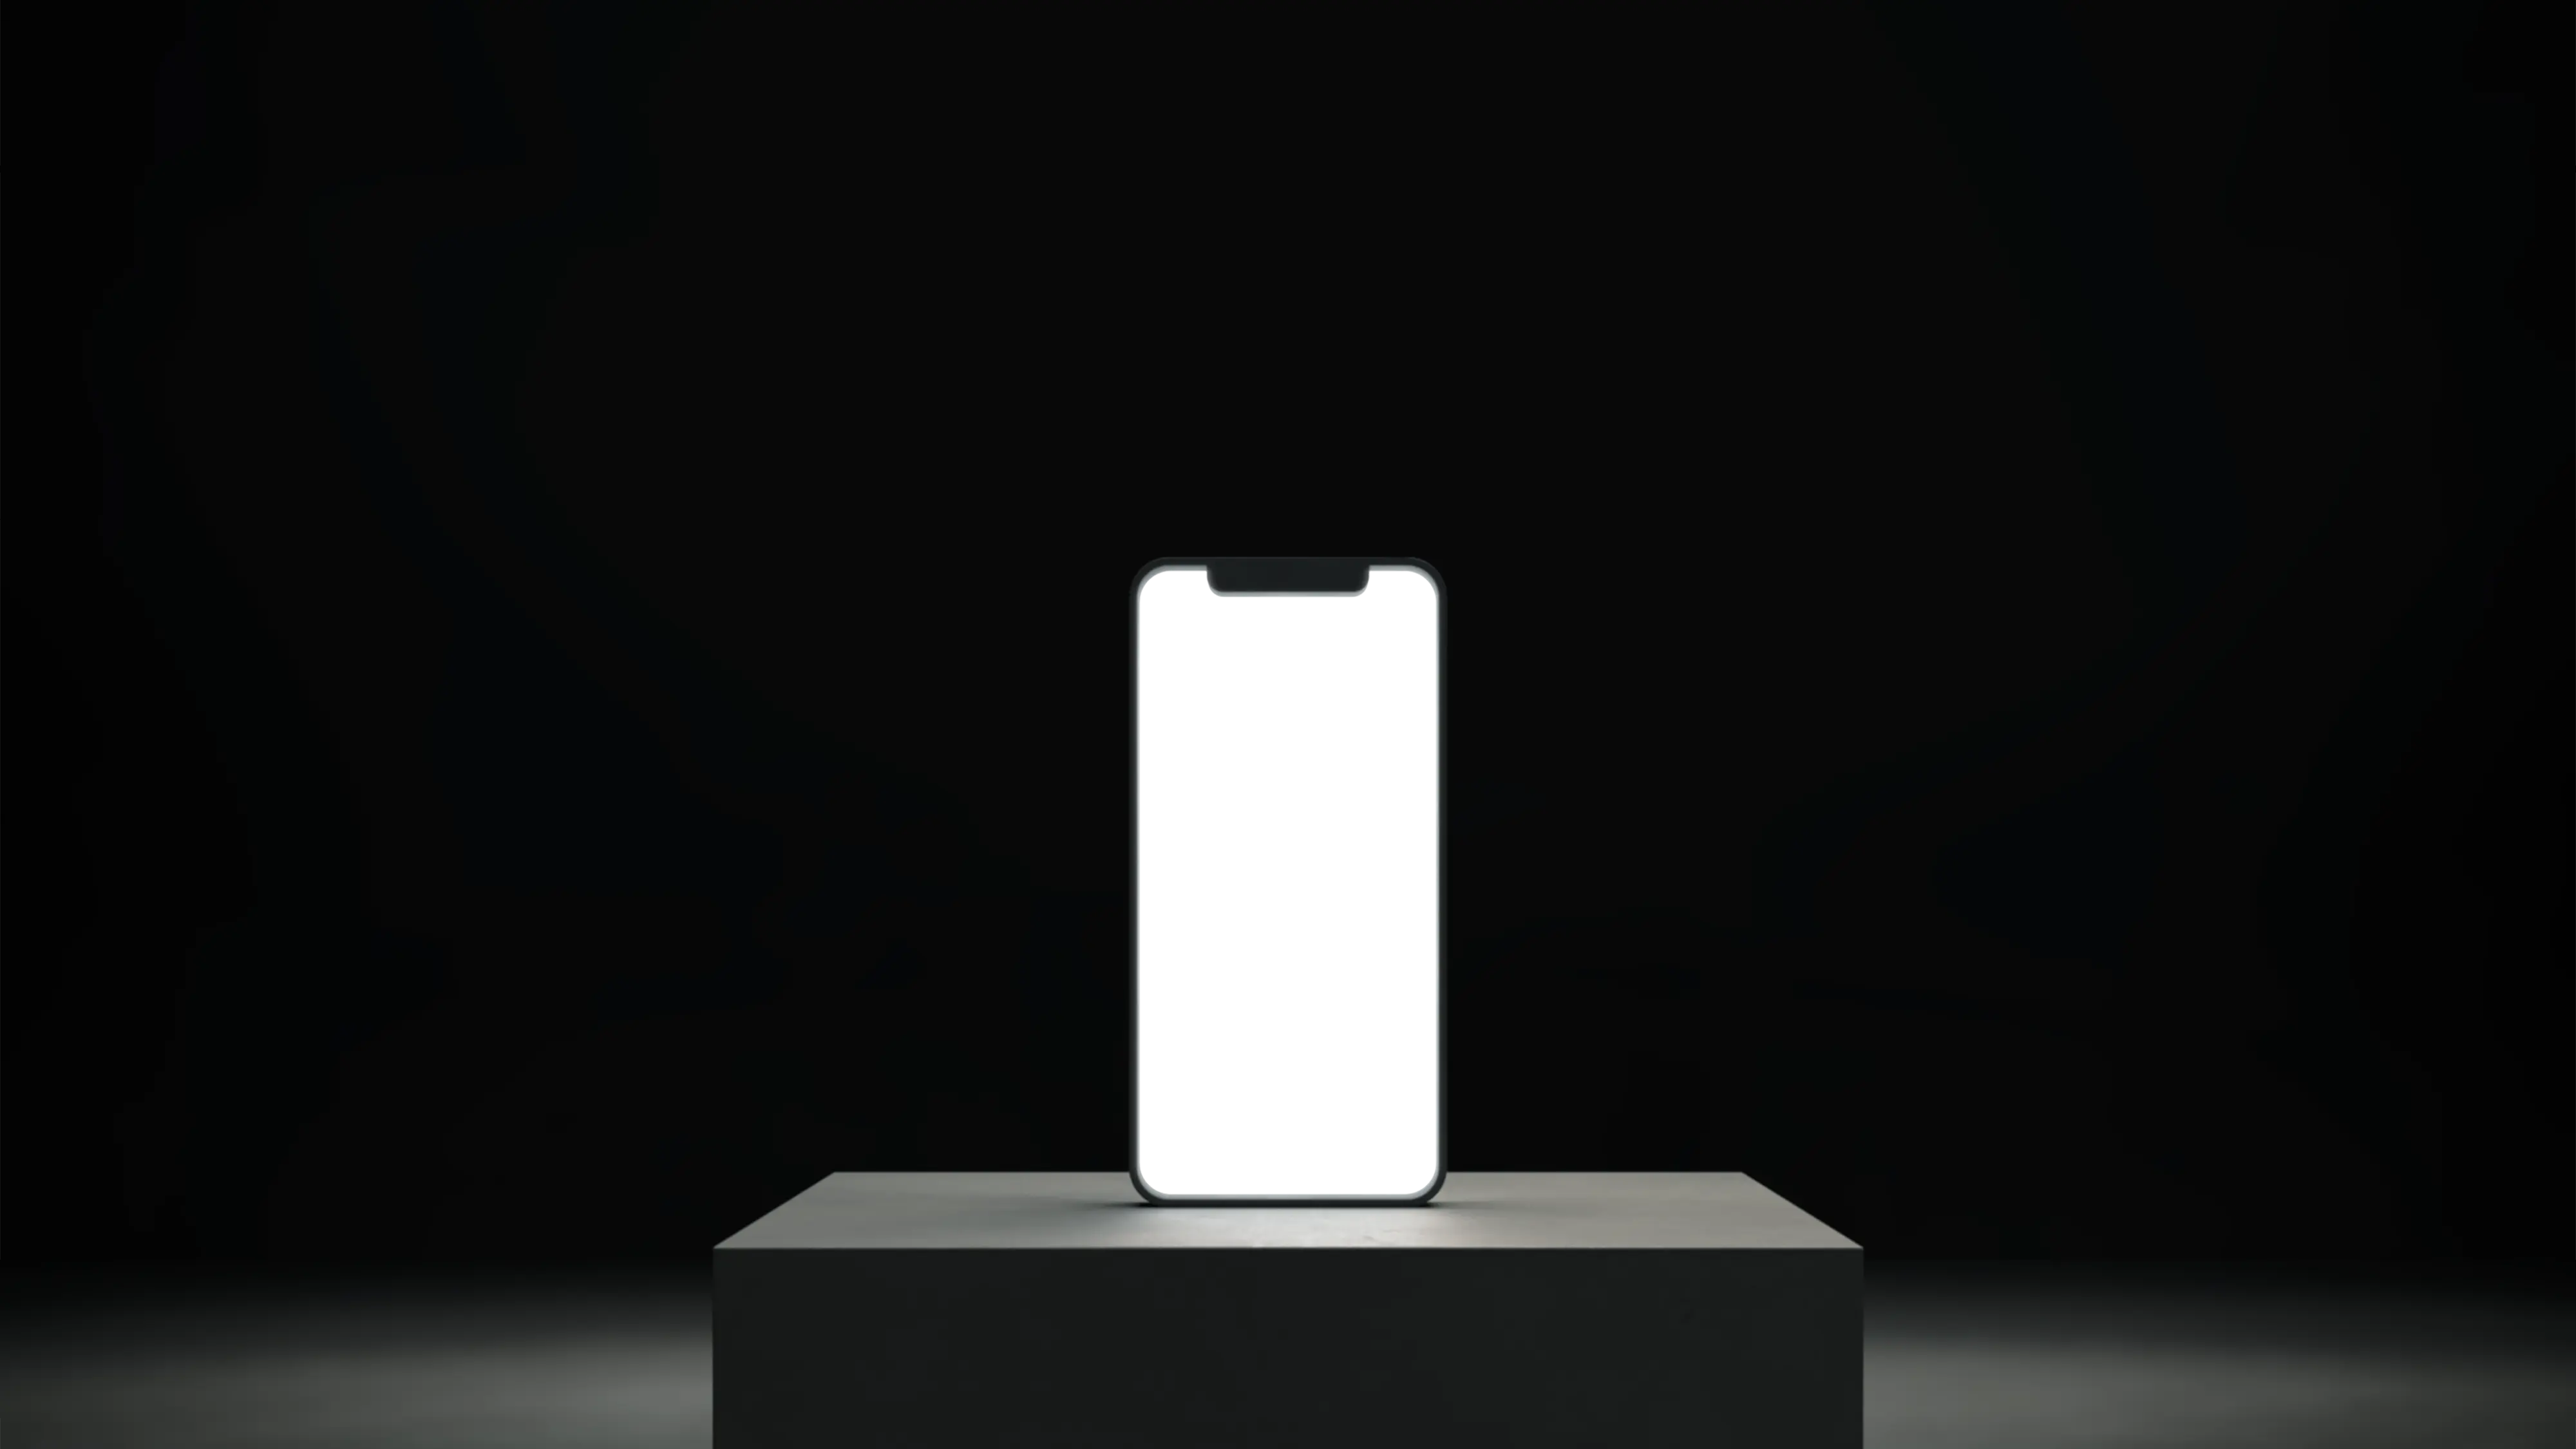 Okostelefon egy tartón, kivilágított üres fehér képernyővel.